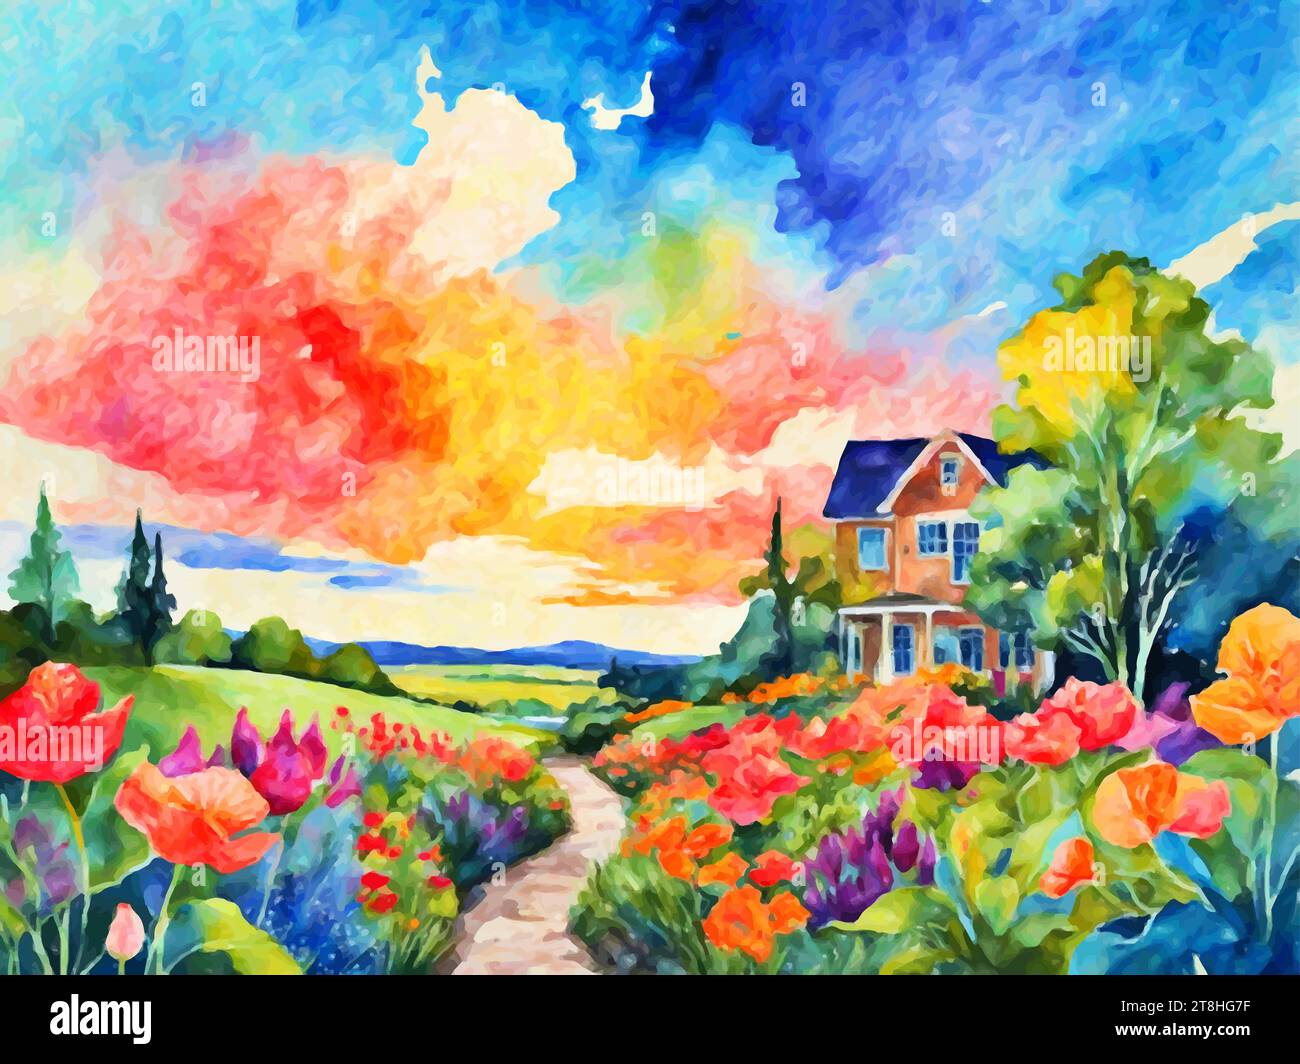 Vistas vibrantes: Spring Garden representa una escena colorida y animada del jardín, llena de una variedad de flores en flor en varios tonos y tamaños. Ilustración del Vector